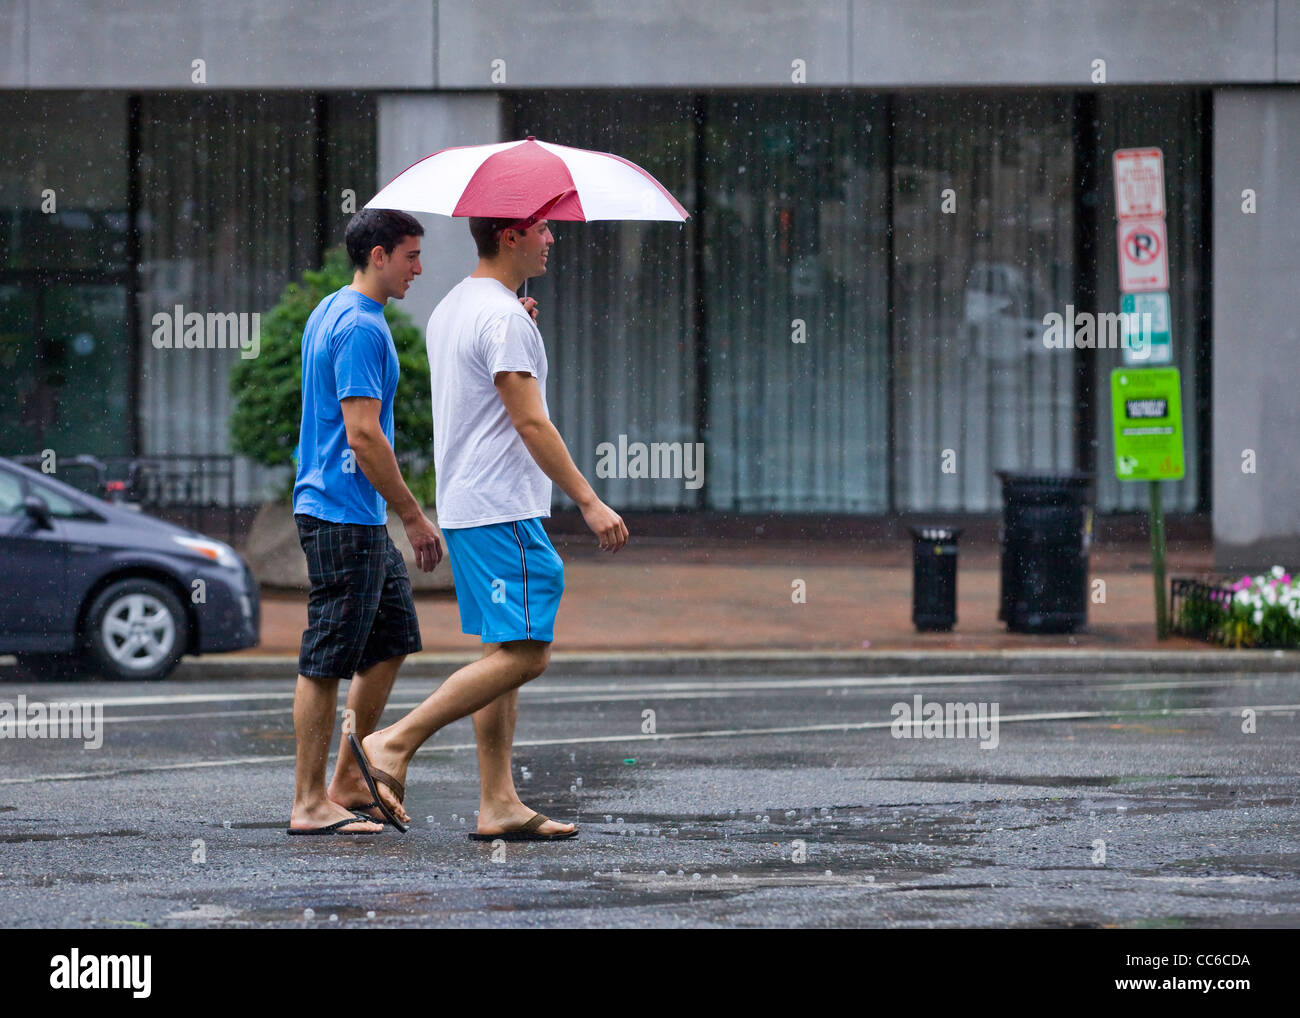 Junge Männer, die über die Straße halten einen Regenschirm an einem regnerischen Tag Stockfoto